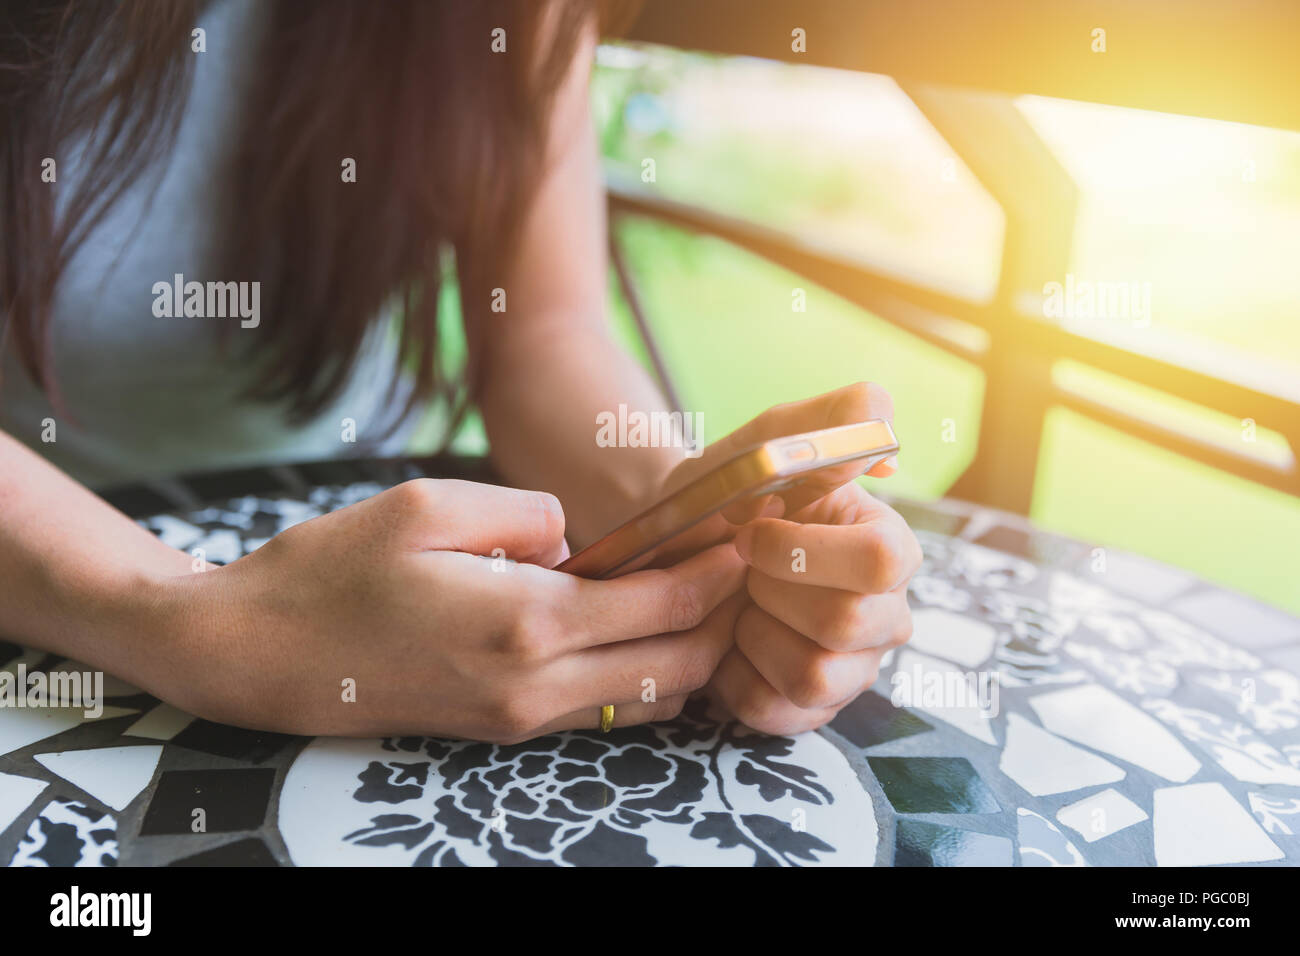 girl sitting using smartphone Stock Photo